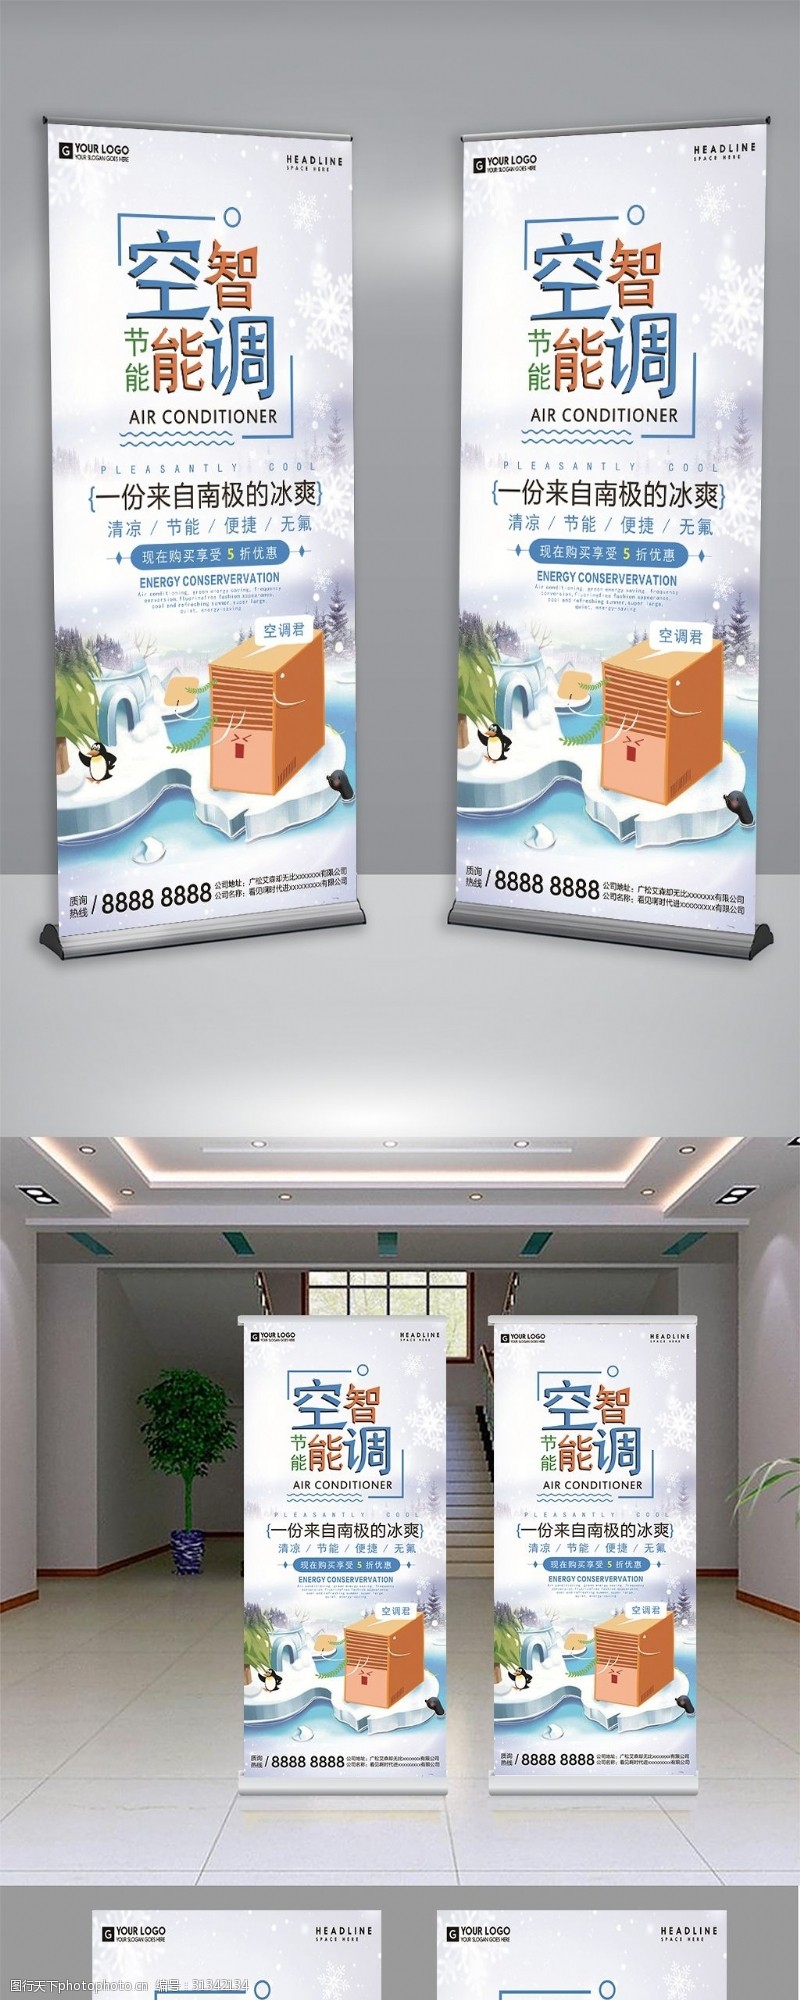 家电下乡创意卡通智能空调宣传促销展架